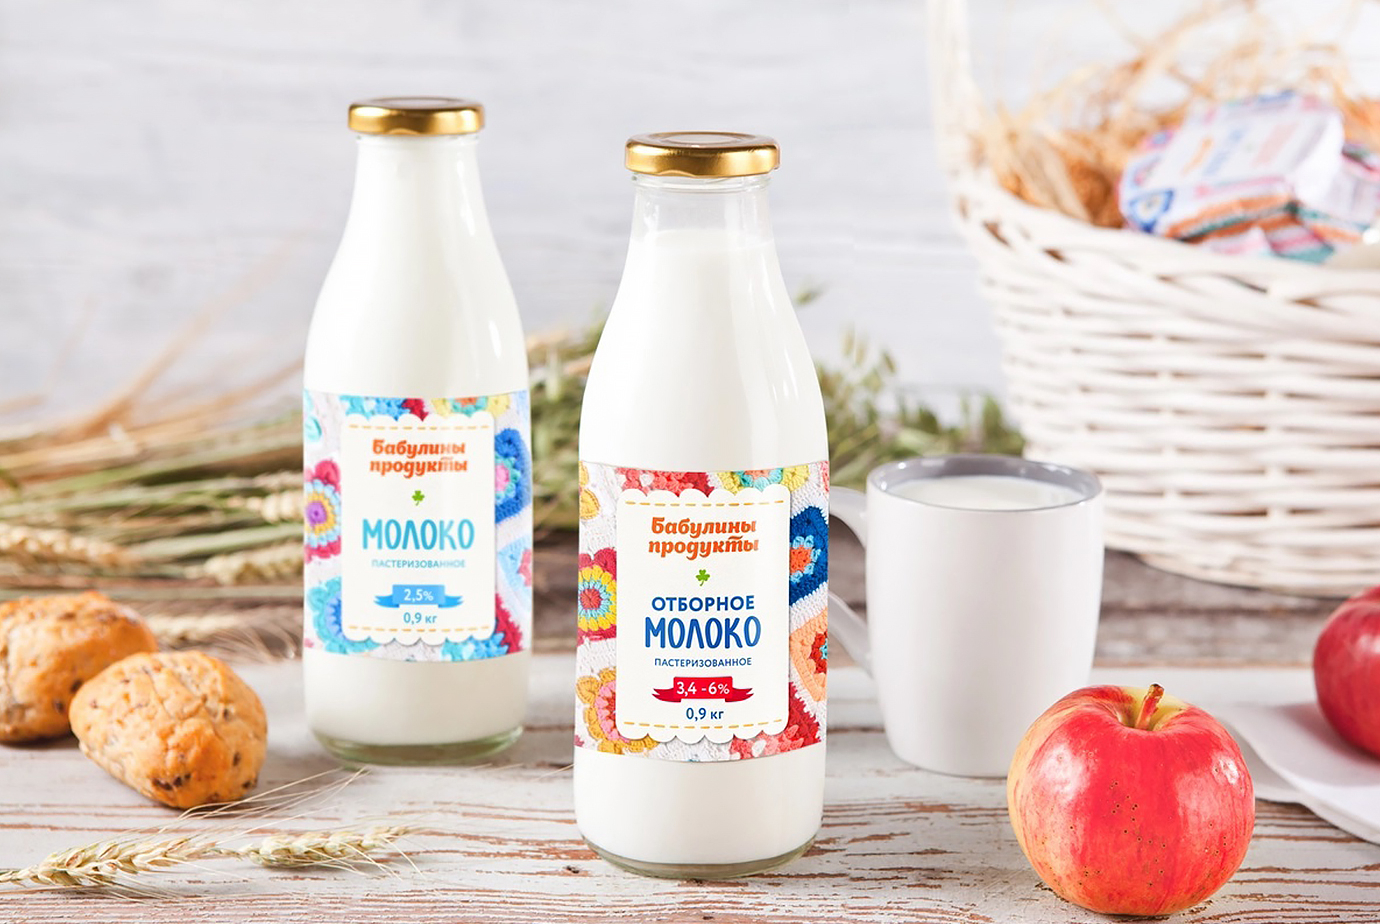 Создание дизайна этикетки на бутылку молока бренда “Бабулины продукты”